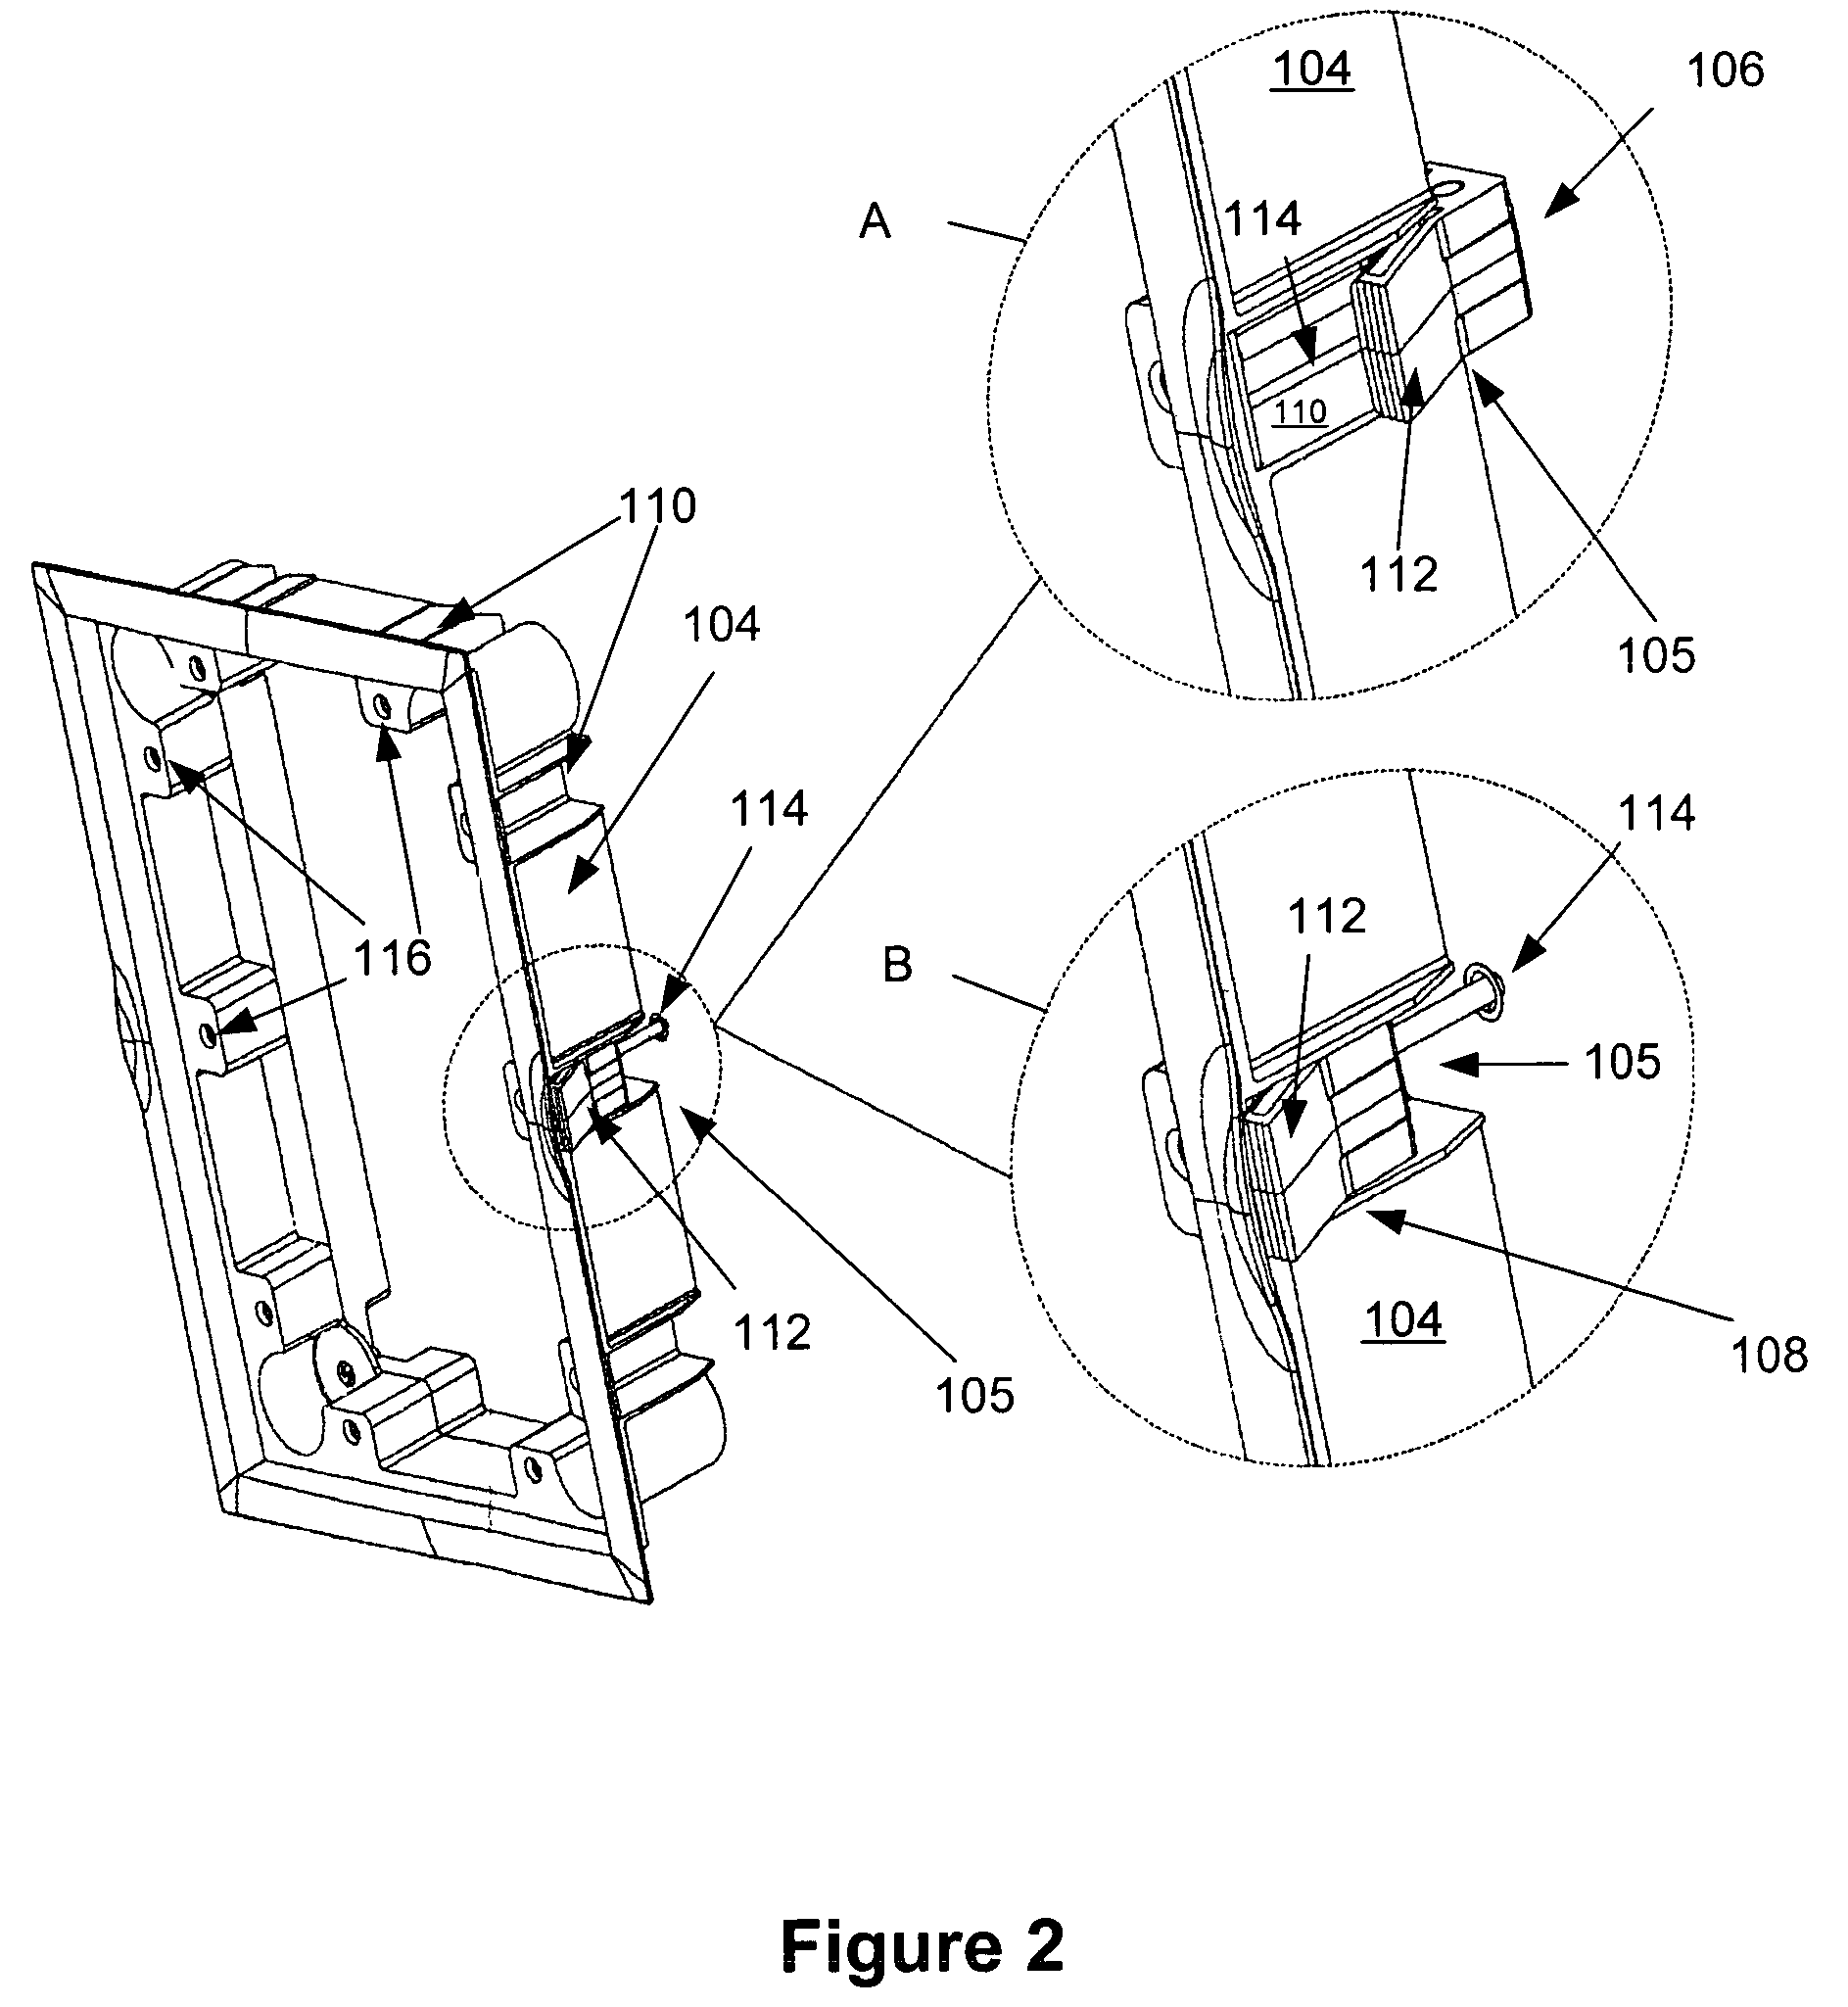 Loudspeaker mounting mechanism